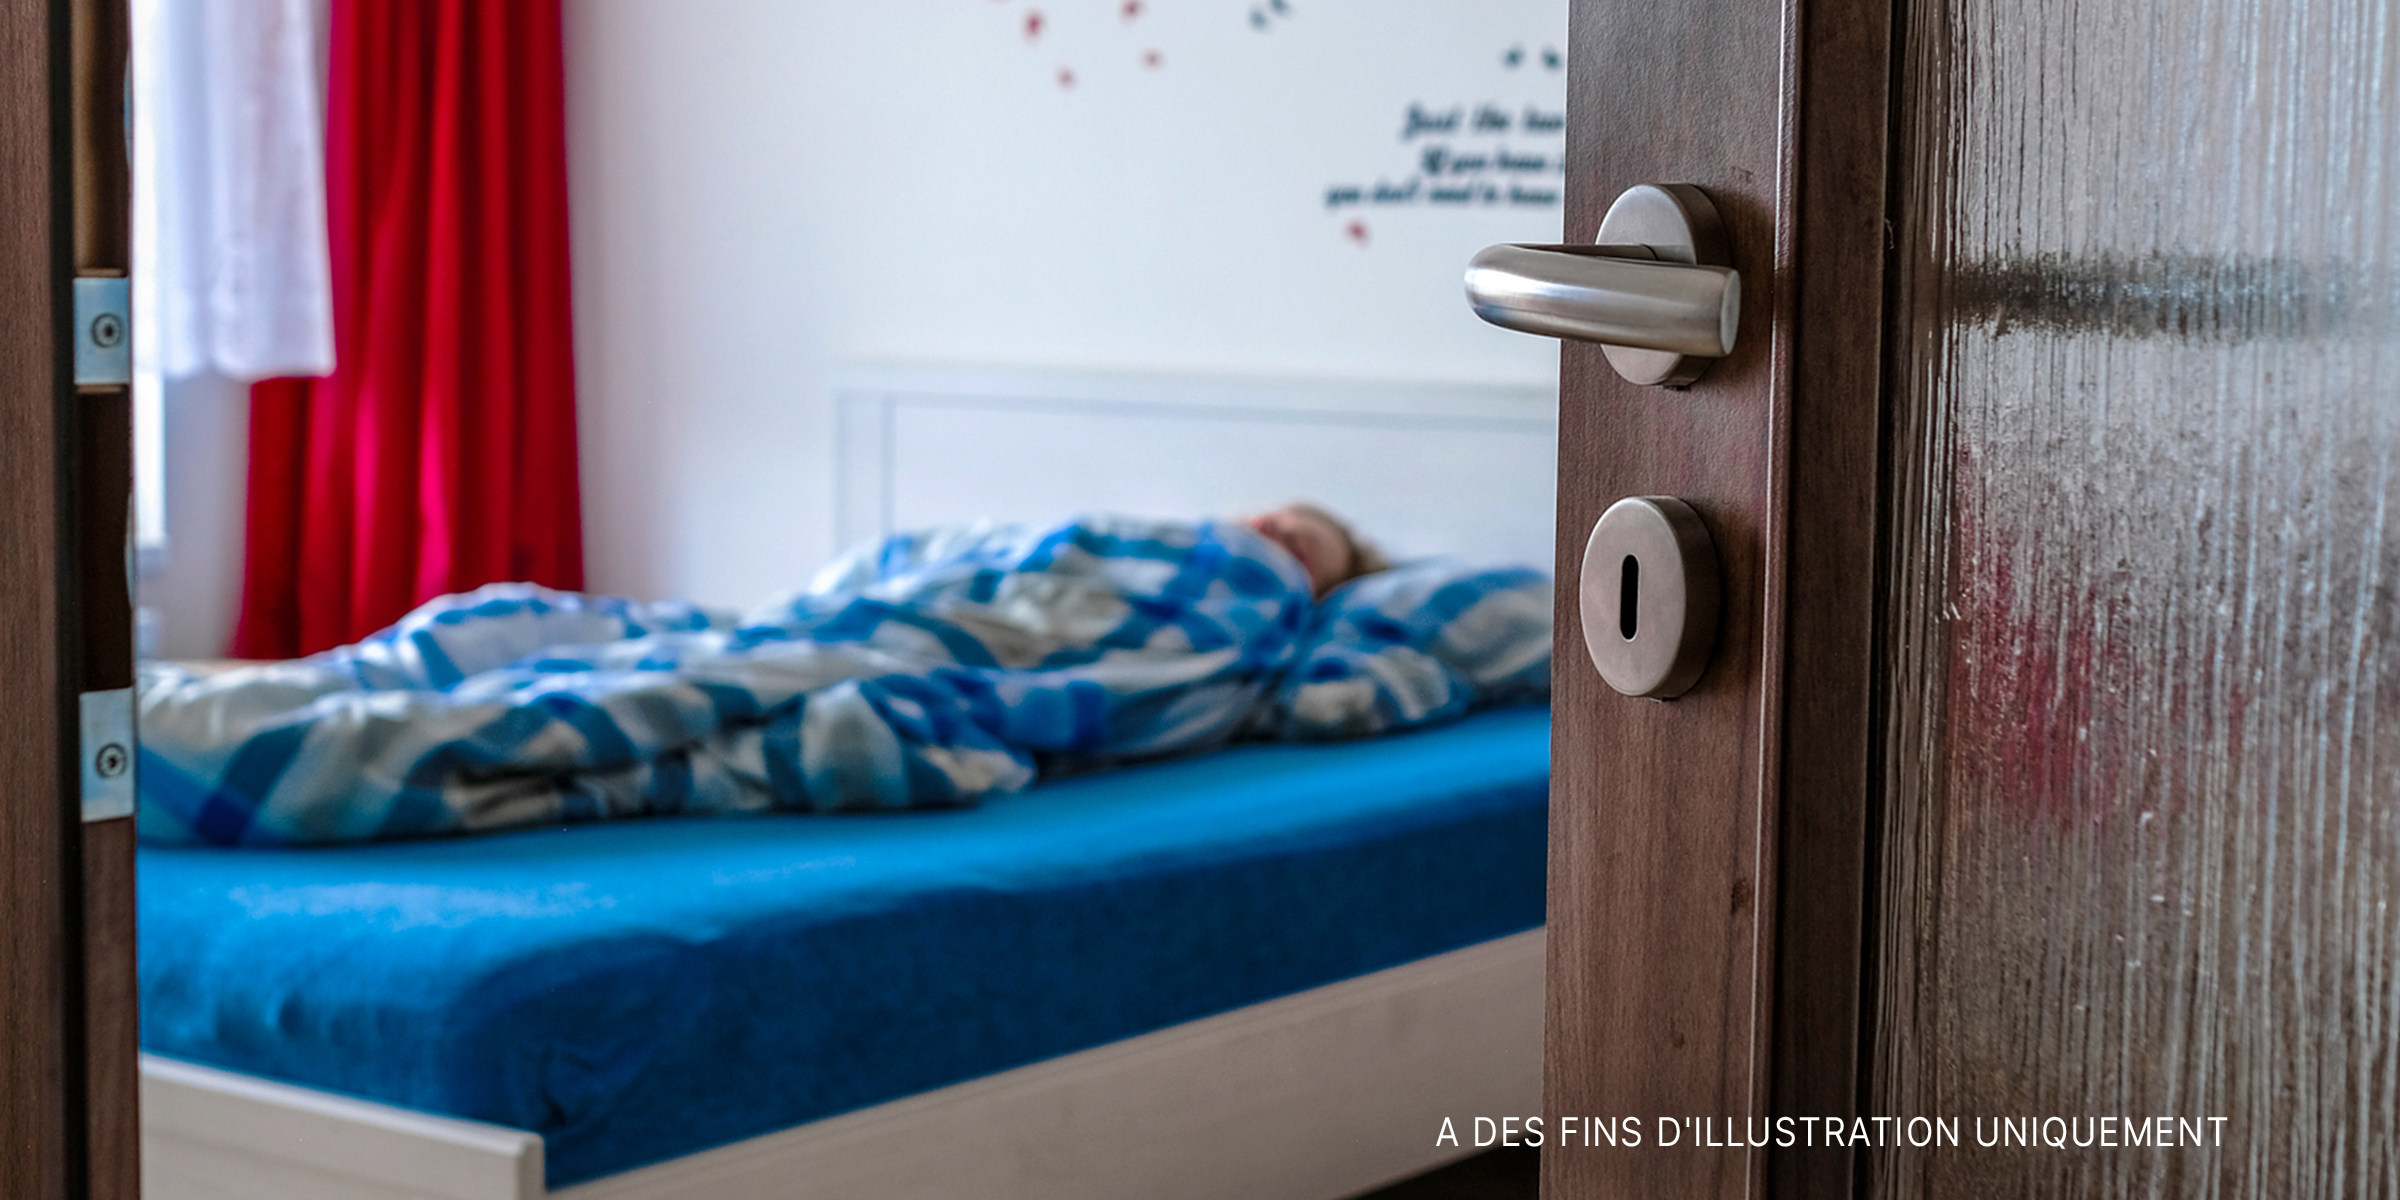 Une femme allongée dans son lit laissant la porte ouverte | Source : Shutterstock